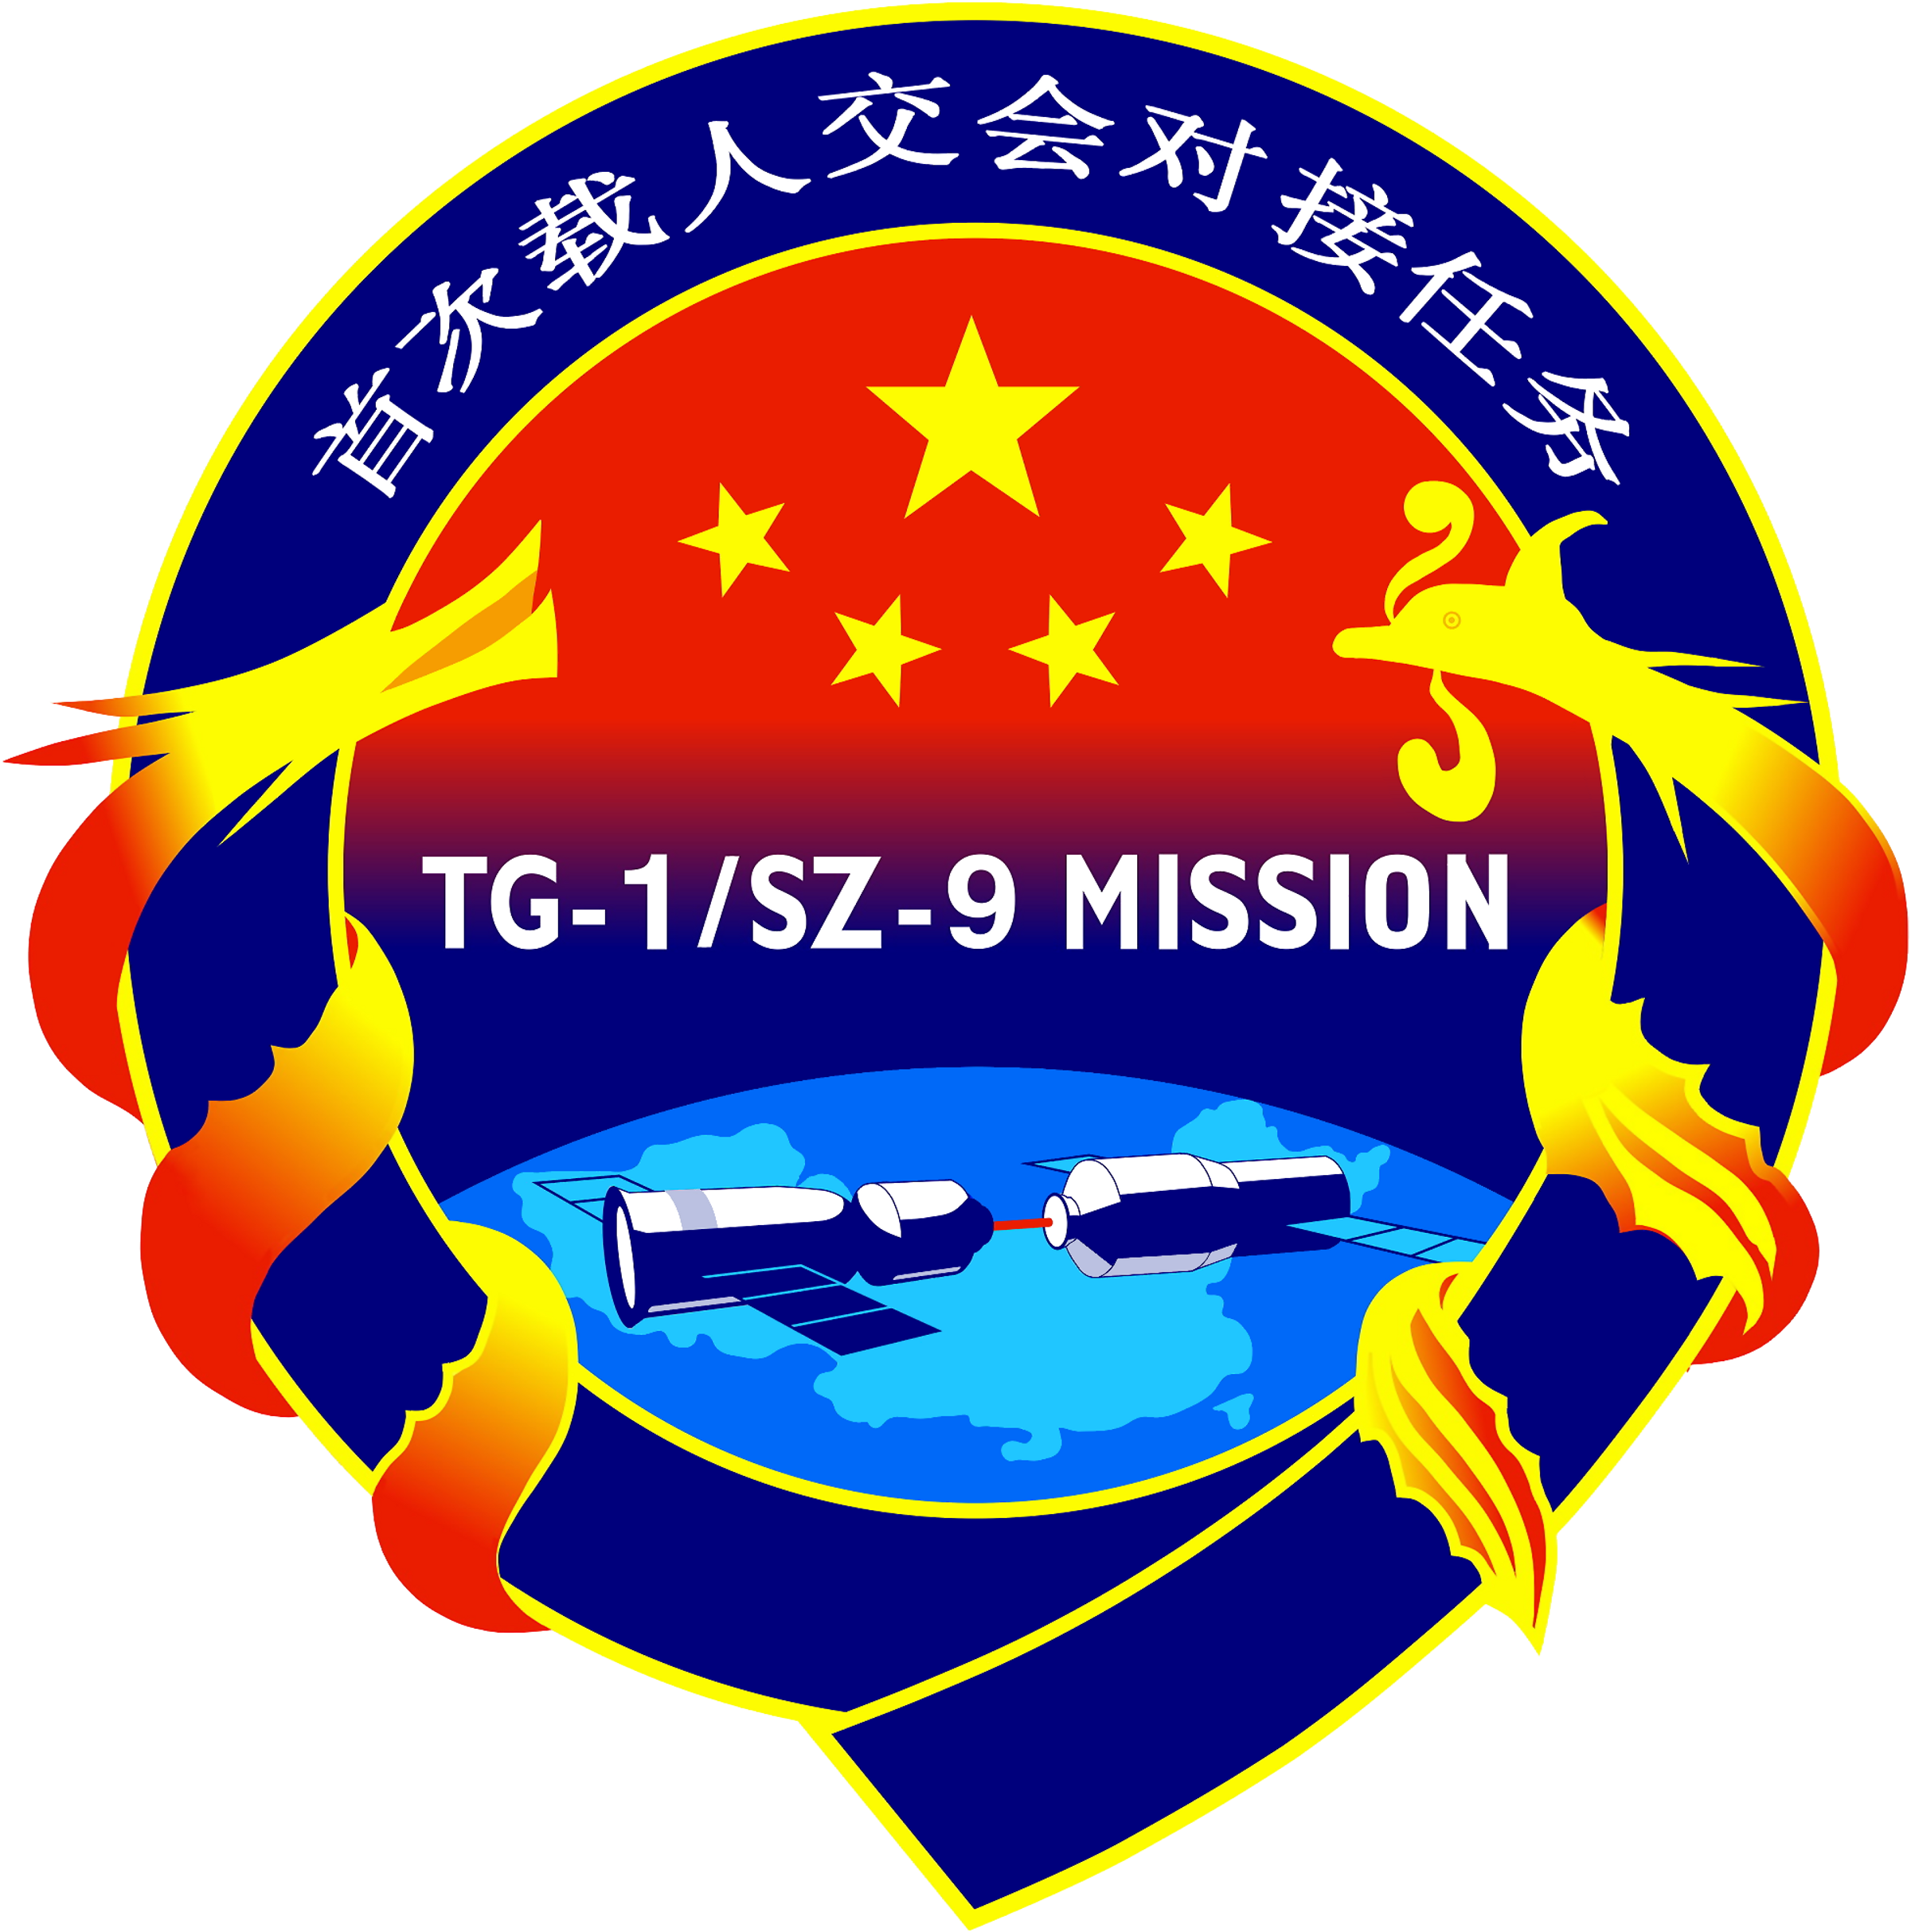 Shenzhou 9